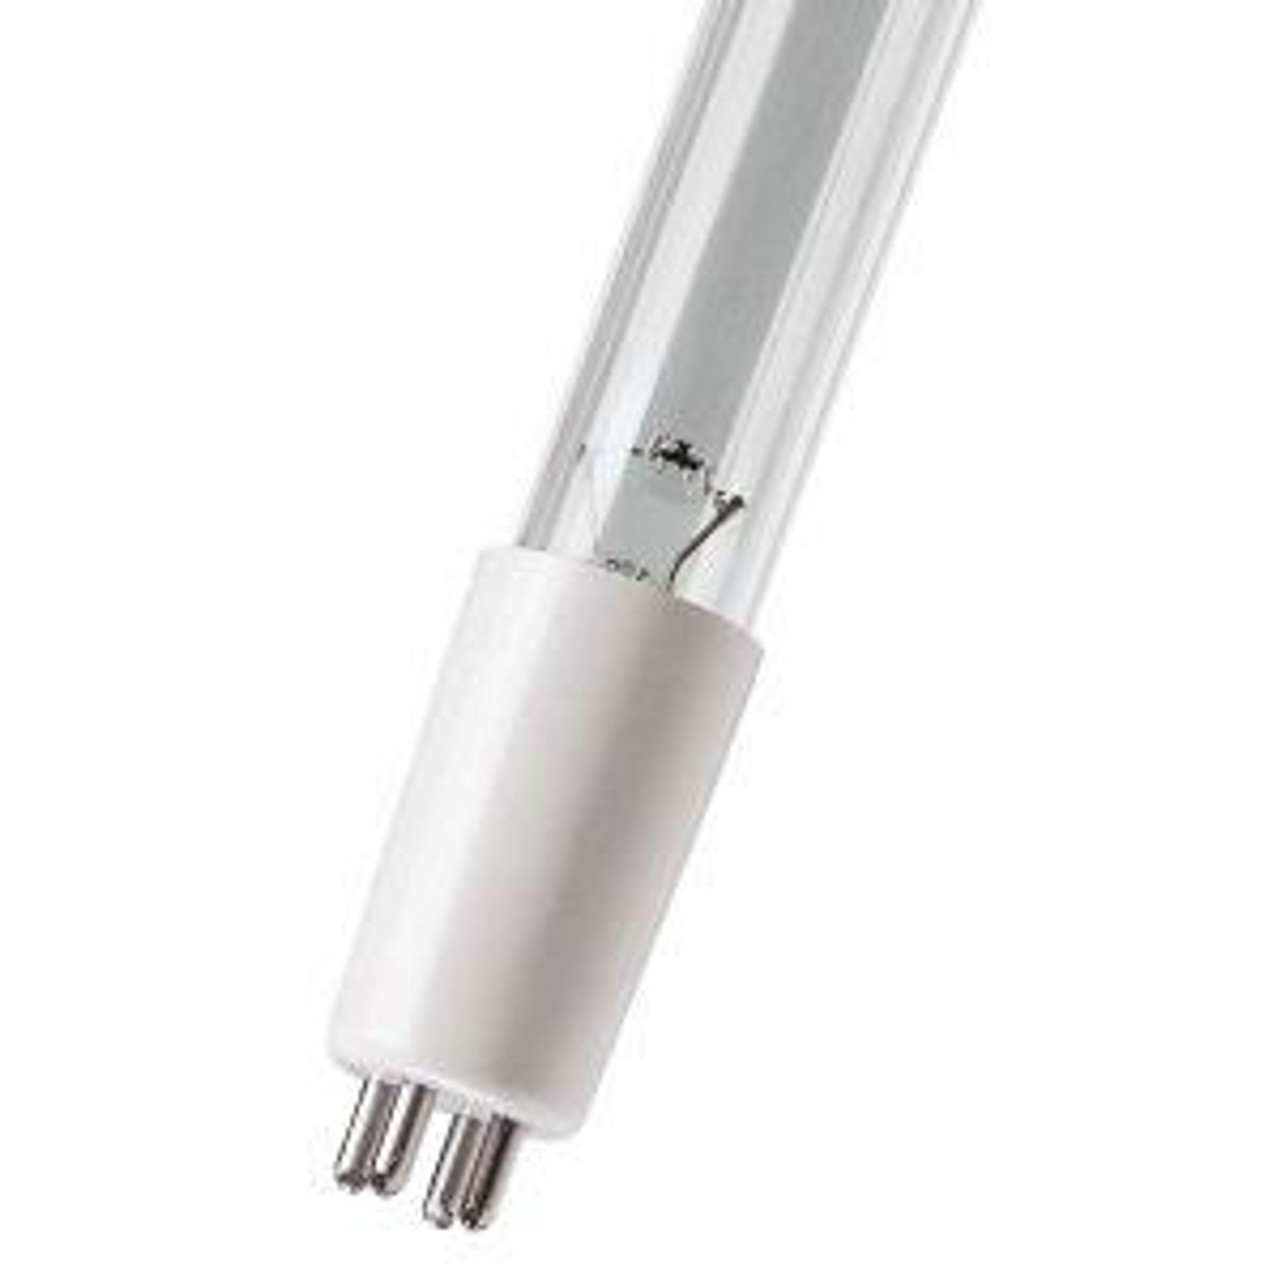 UVLXXRPL3020 27W UV Lamp for Bryant Carrier 208/230V HVAC